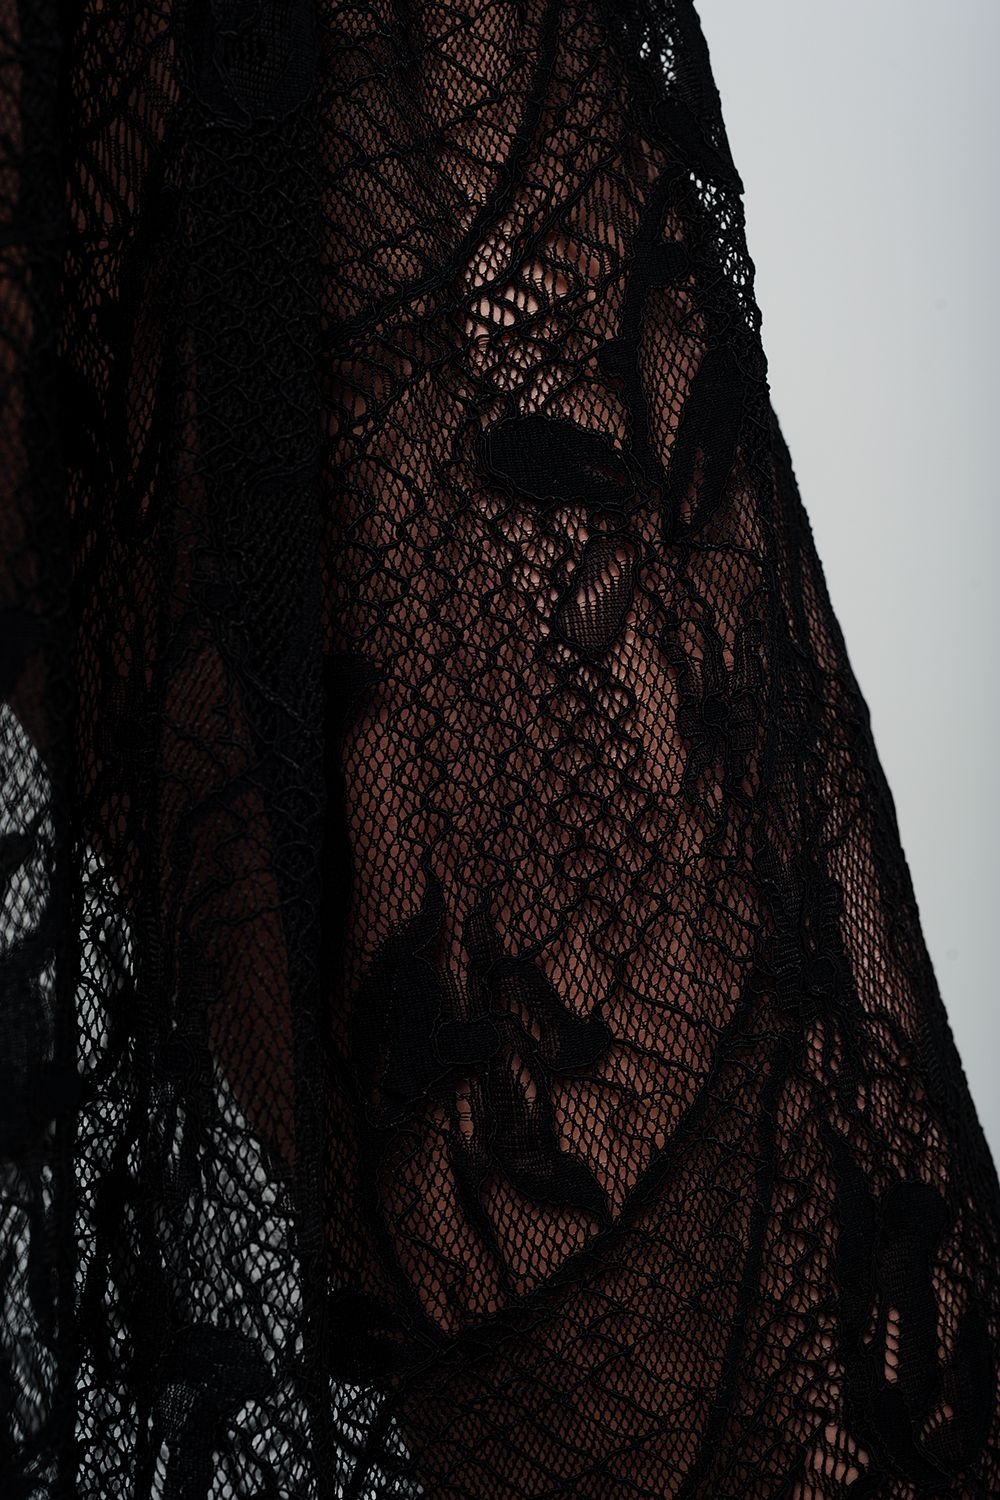 Black lace midi skirt